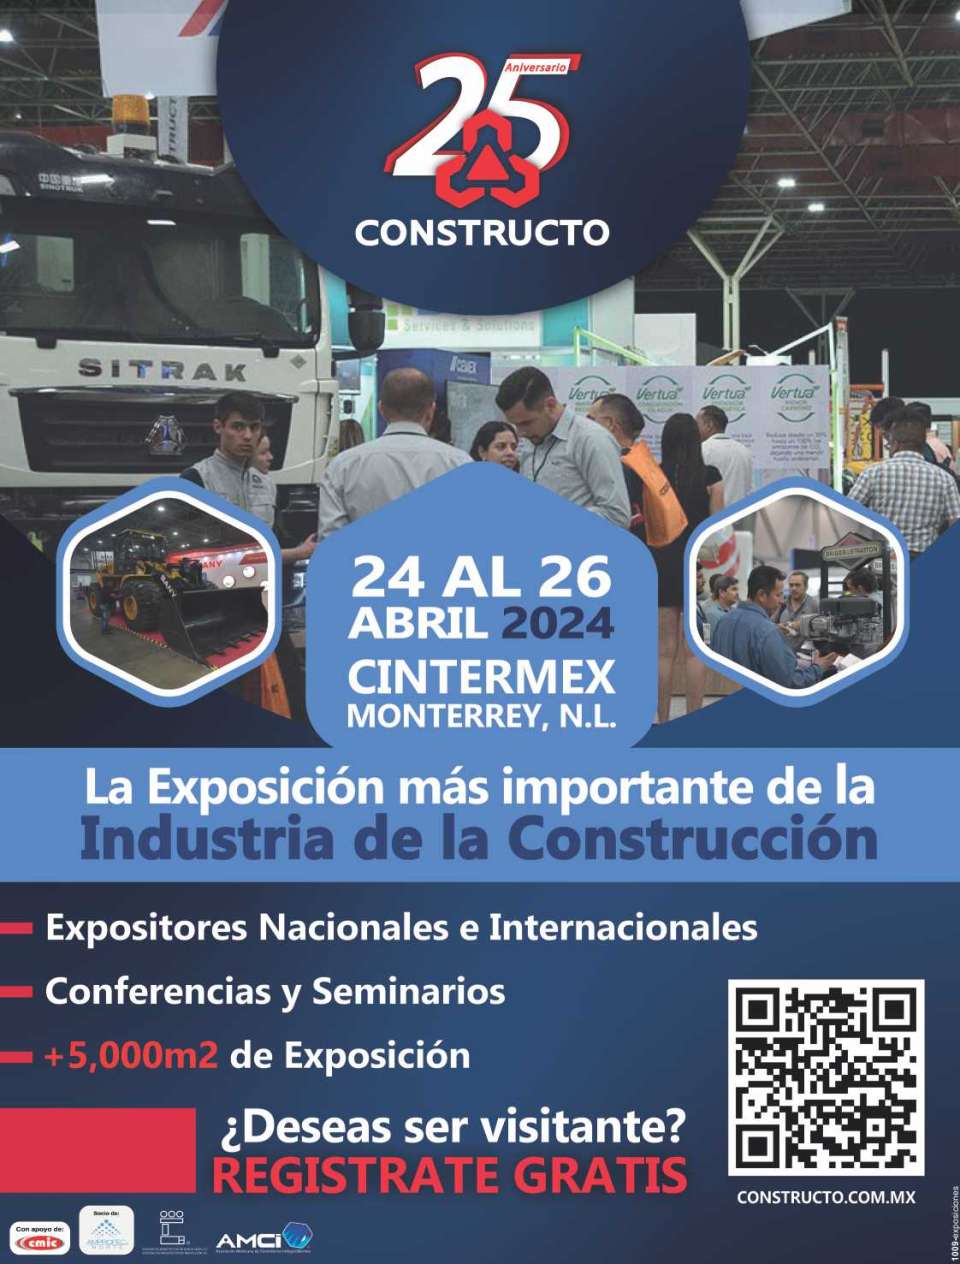 CONSTRUCTO Exposicion Internacional de la Industria de la Construccion. Cintermex Monterrey 24 al 26 de Abril 2024.